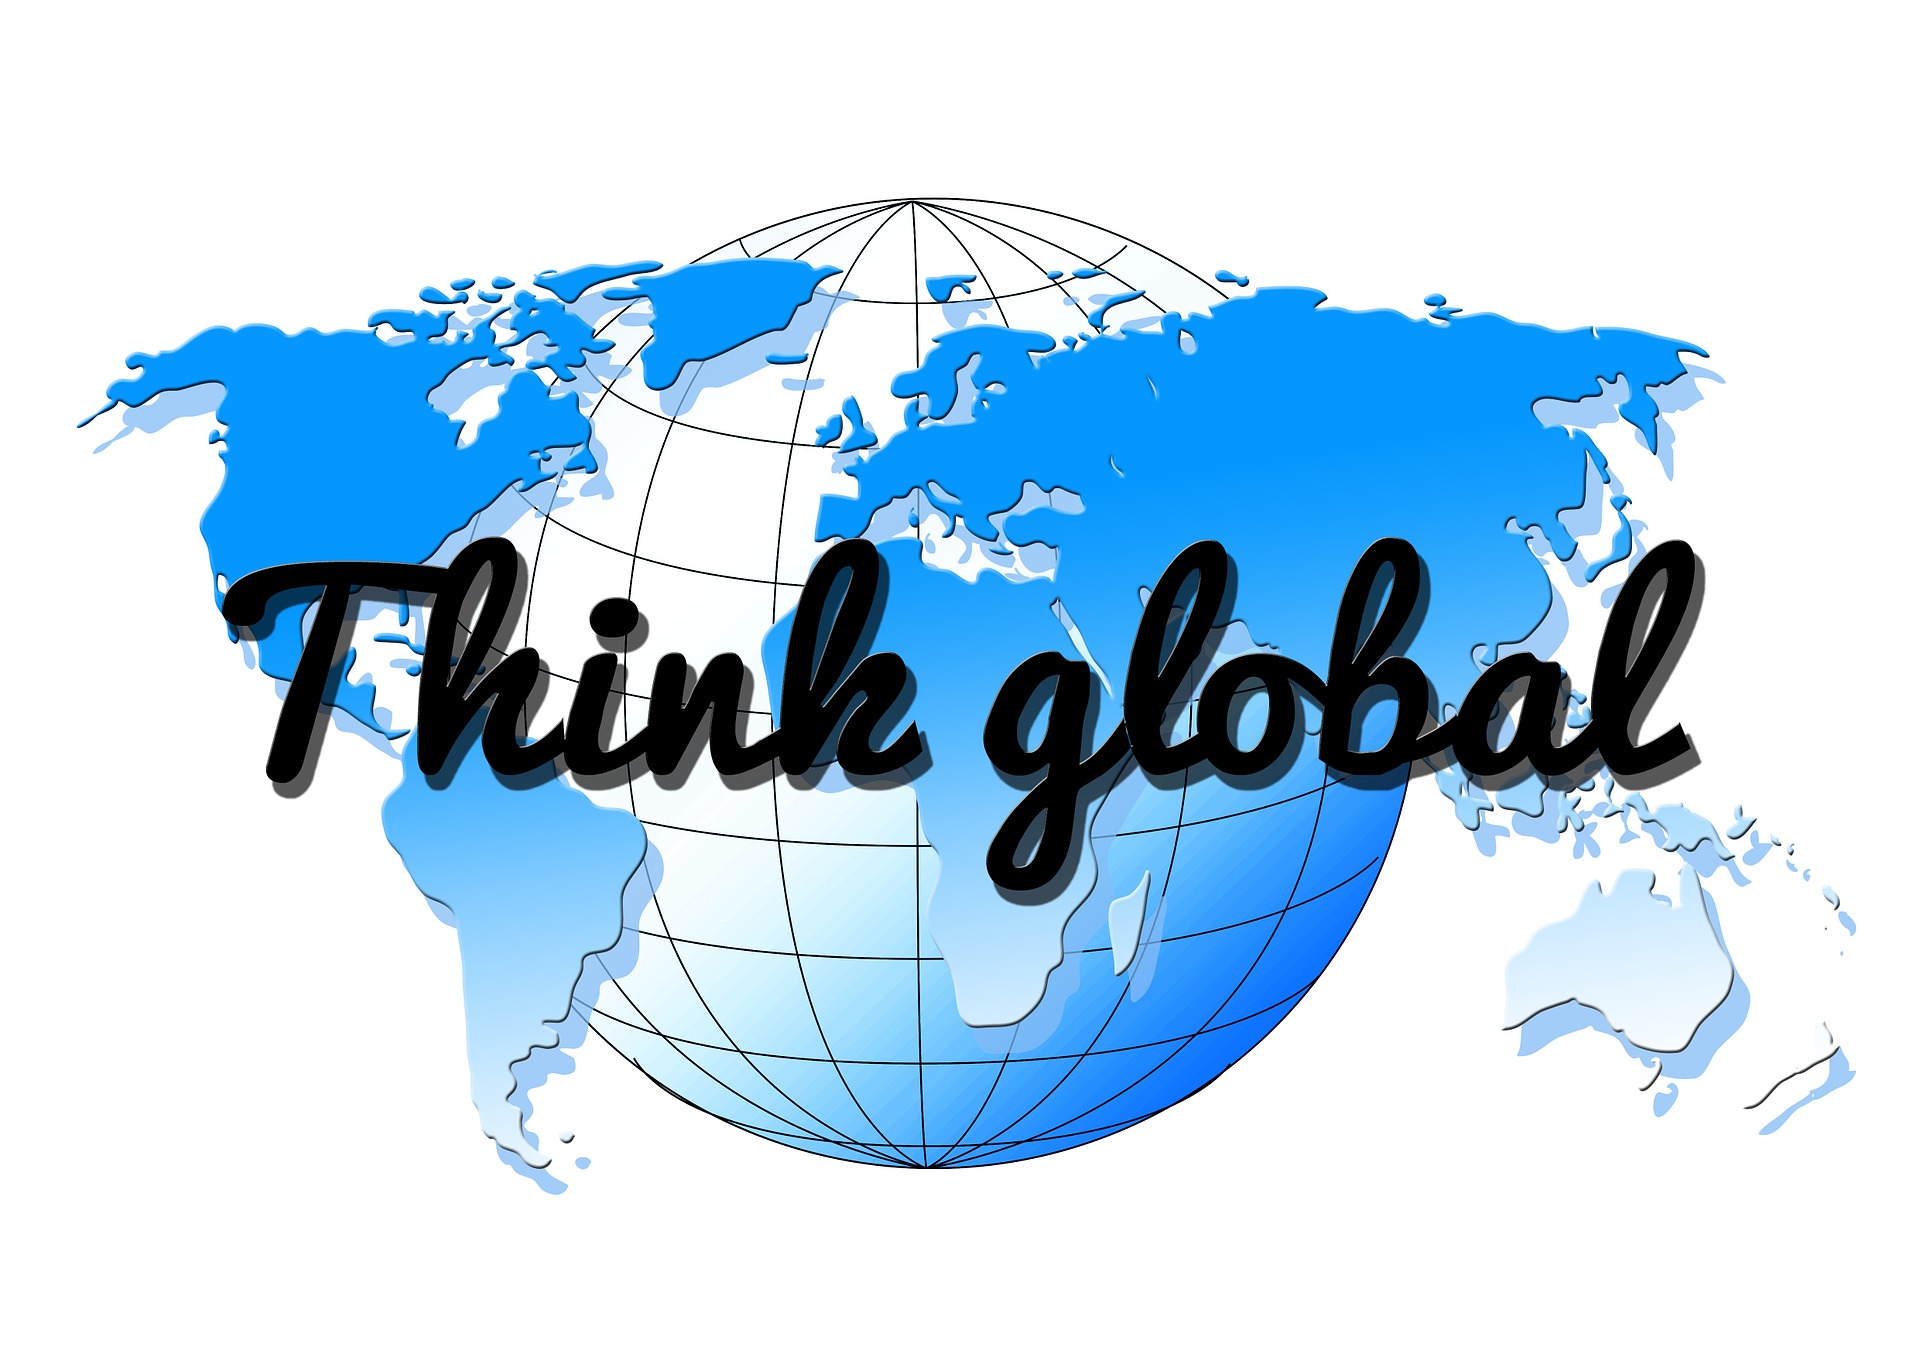 Think global